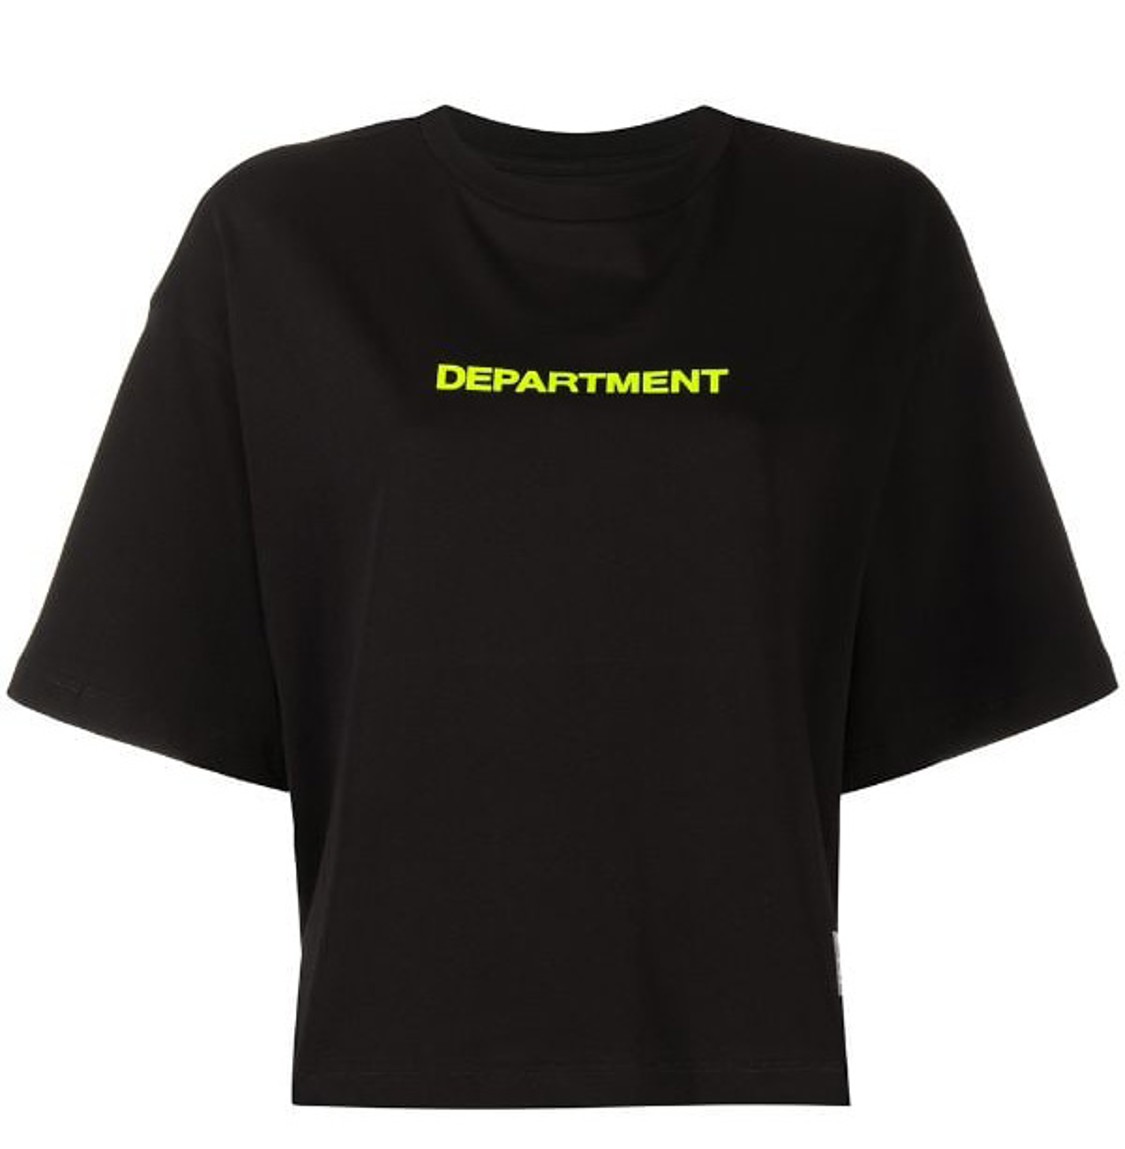 shop Department 5 Sales T-shirts: T-shirts Department 5, modello corto e largo, manica corta, girocollo, scritta sul davanti fluorescente.

Composizione: 100% cotone. number 1843